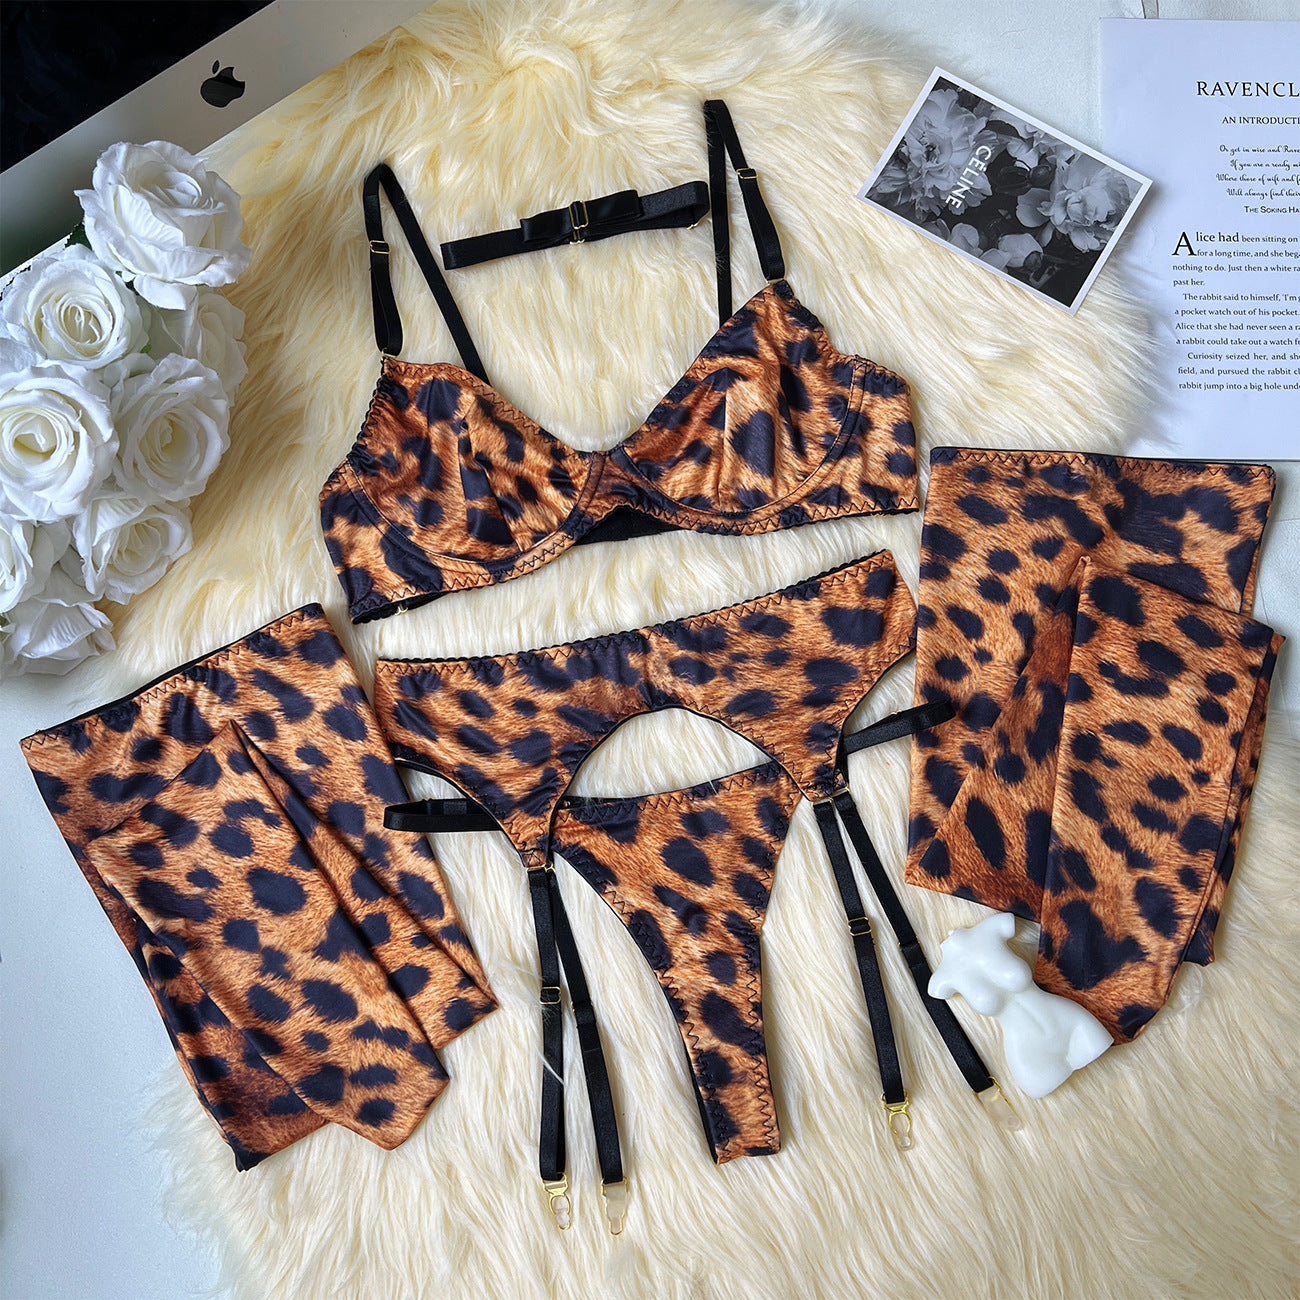 Wild Elegance: Leopard Print Mesh Lingerie Ensemble mooods lingerie 